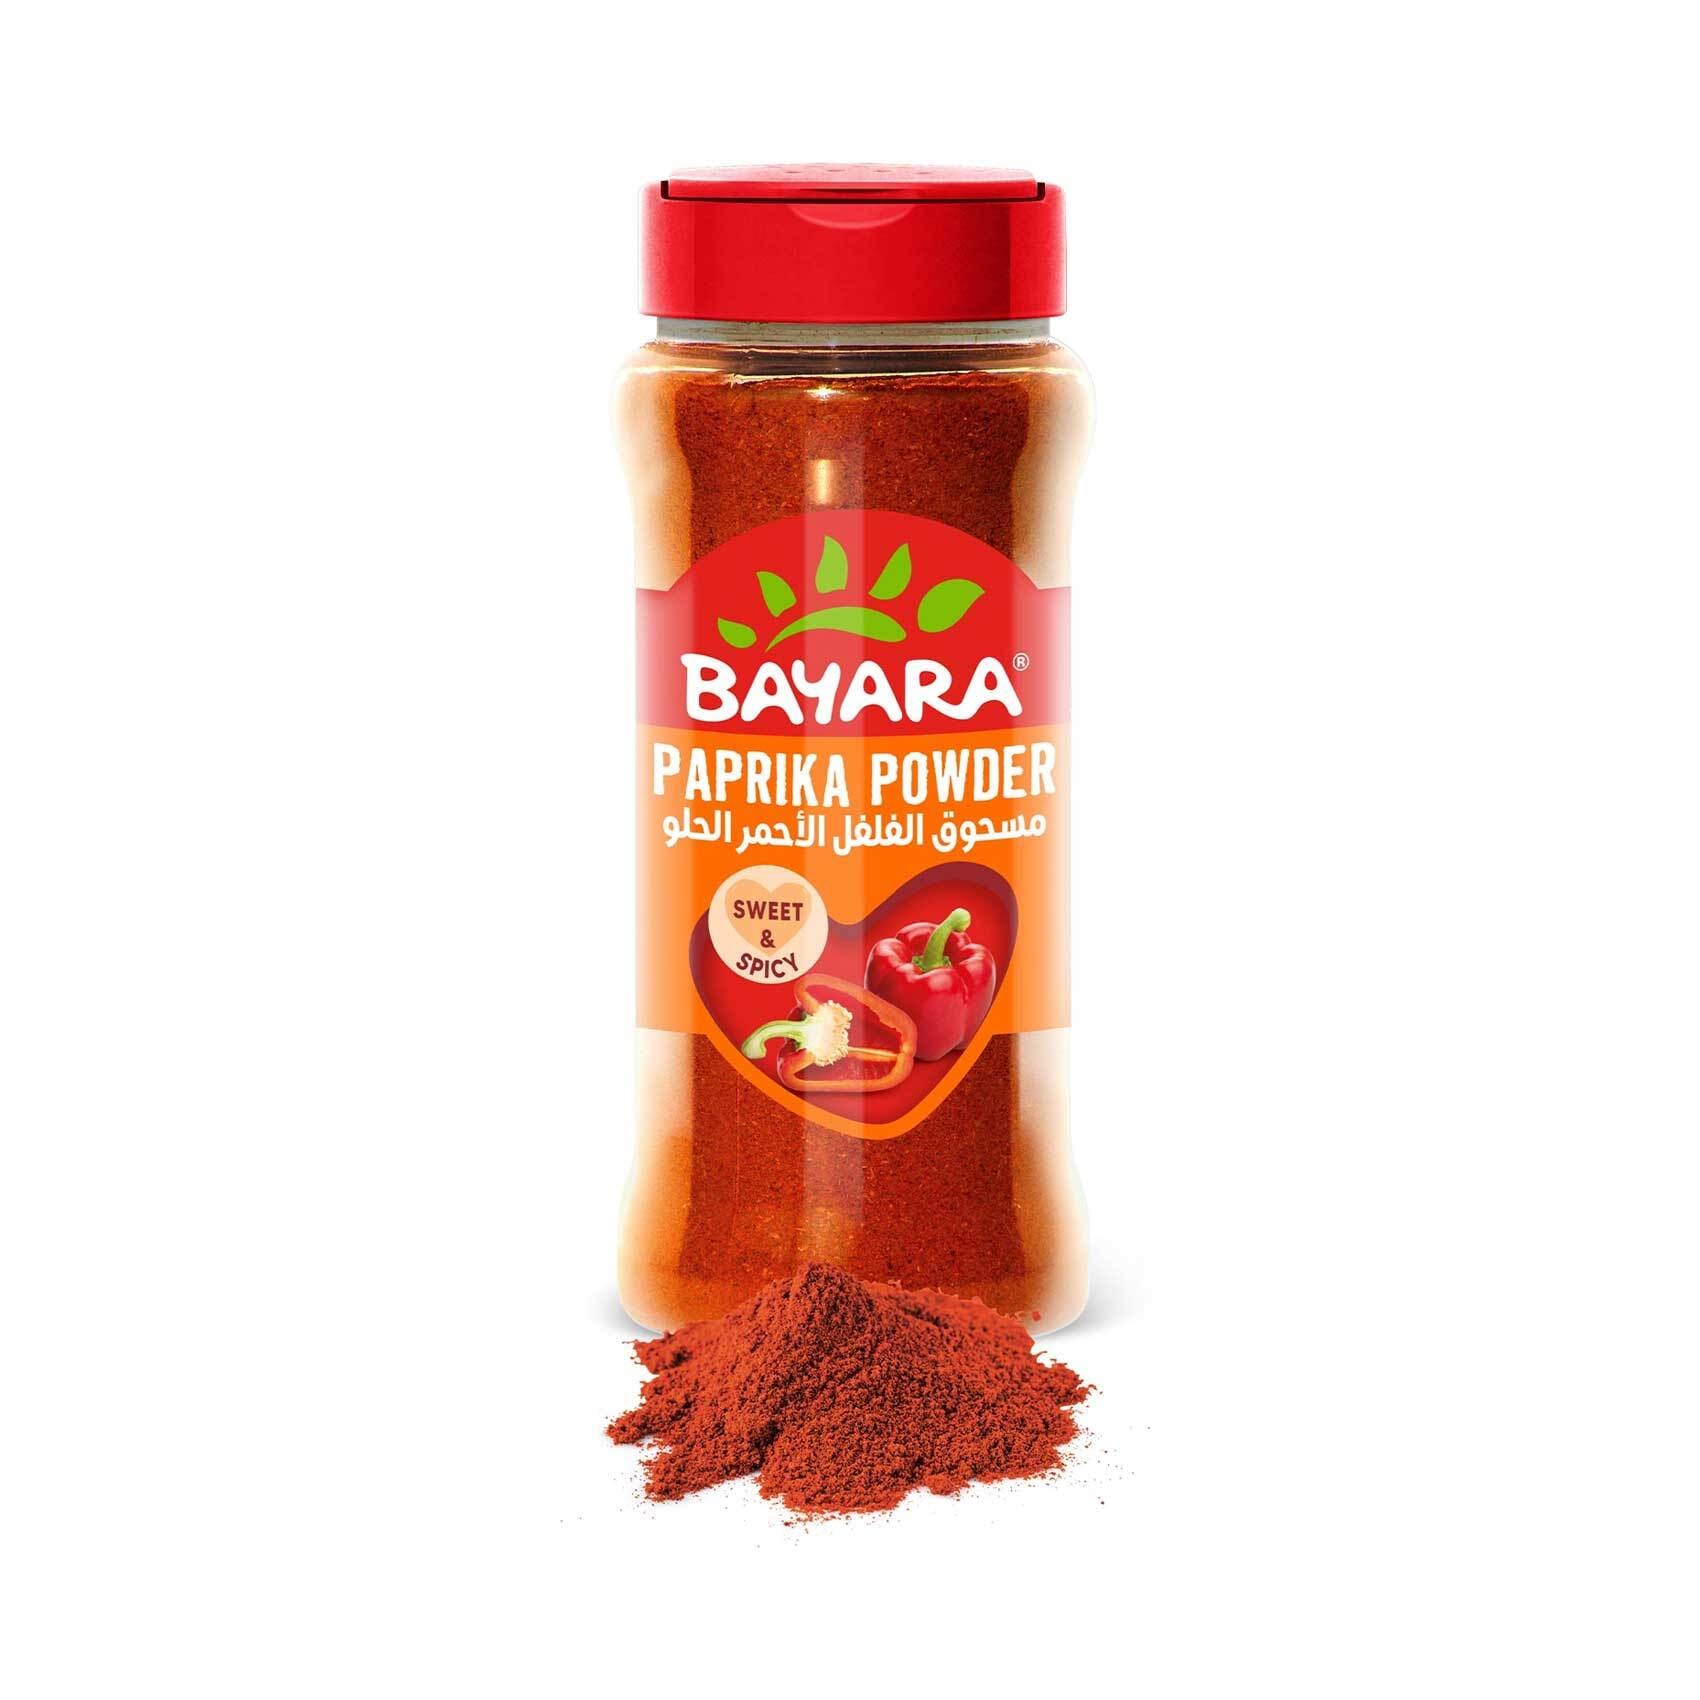 Buy Bayara Paprika Powder 150g Online